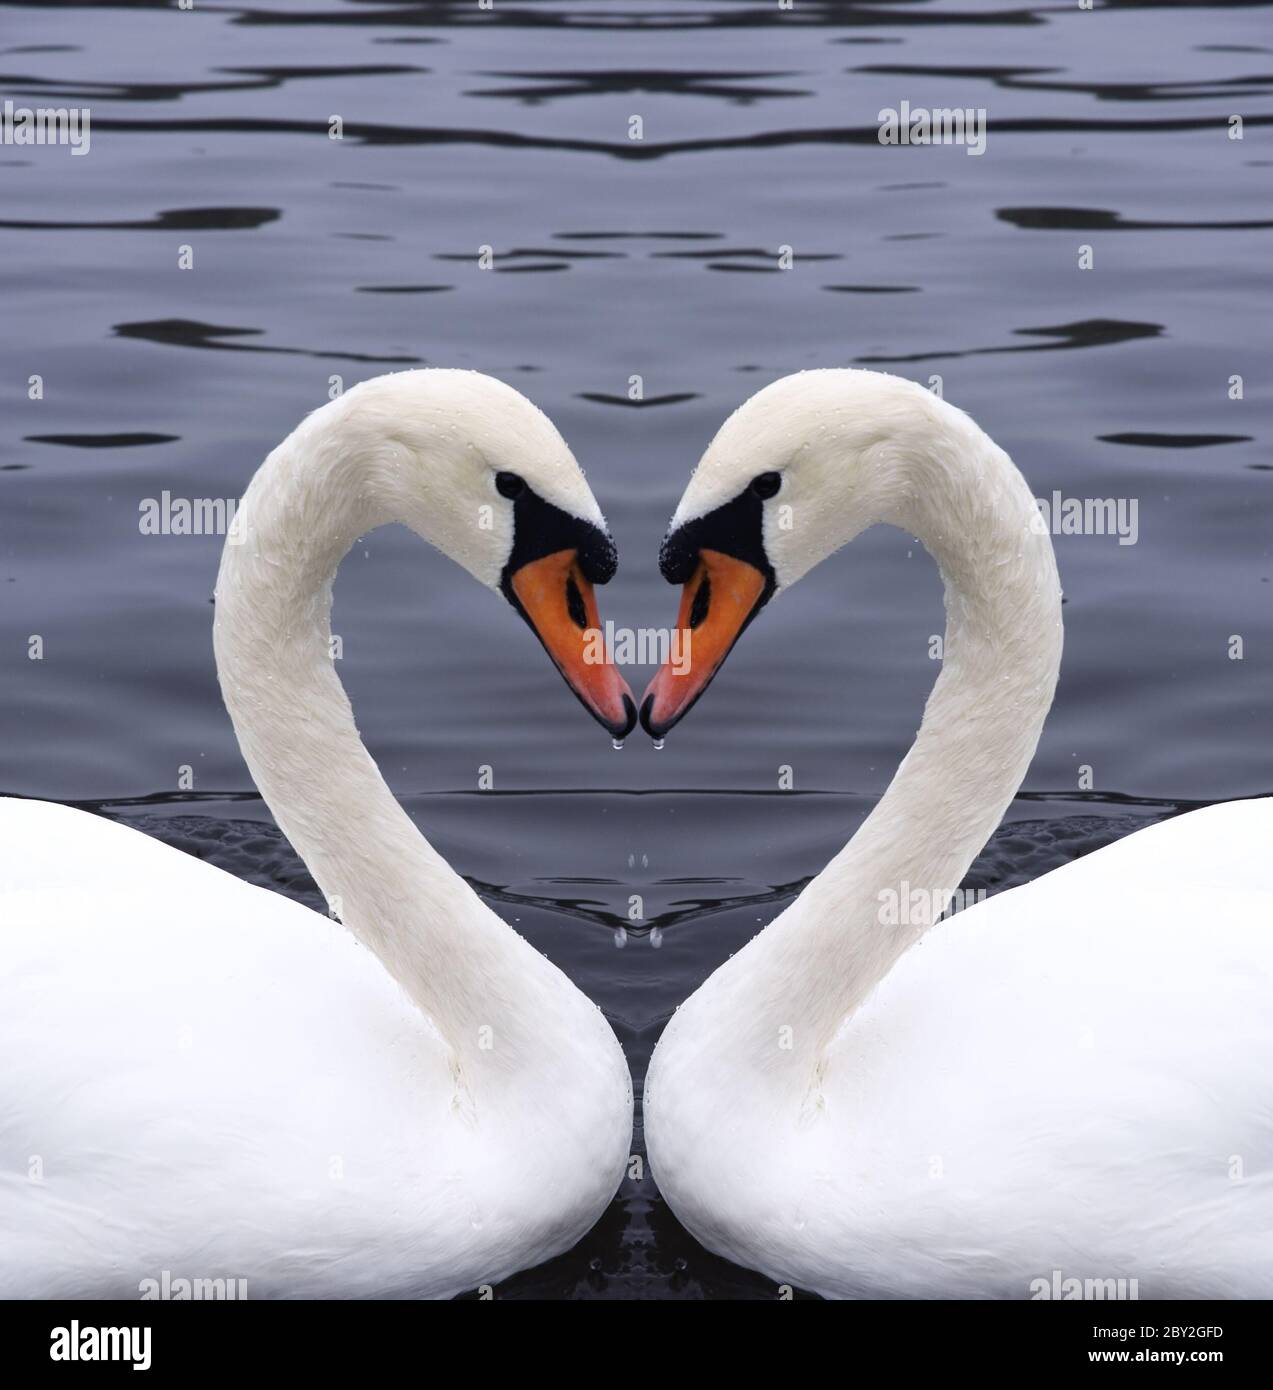 Верность в паре. Лебедь. Лебеди сердце. Красивые лебеди. Любовь и лебеди.